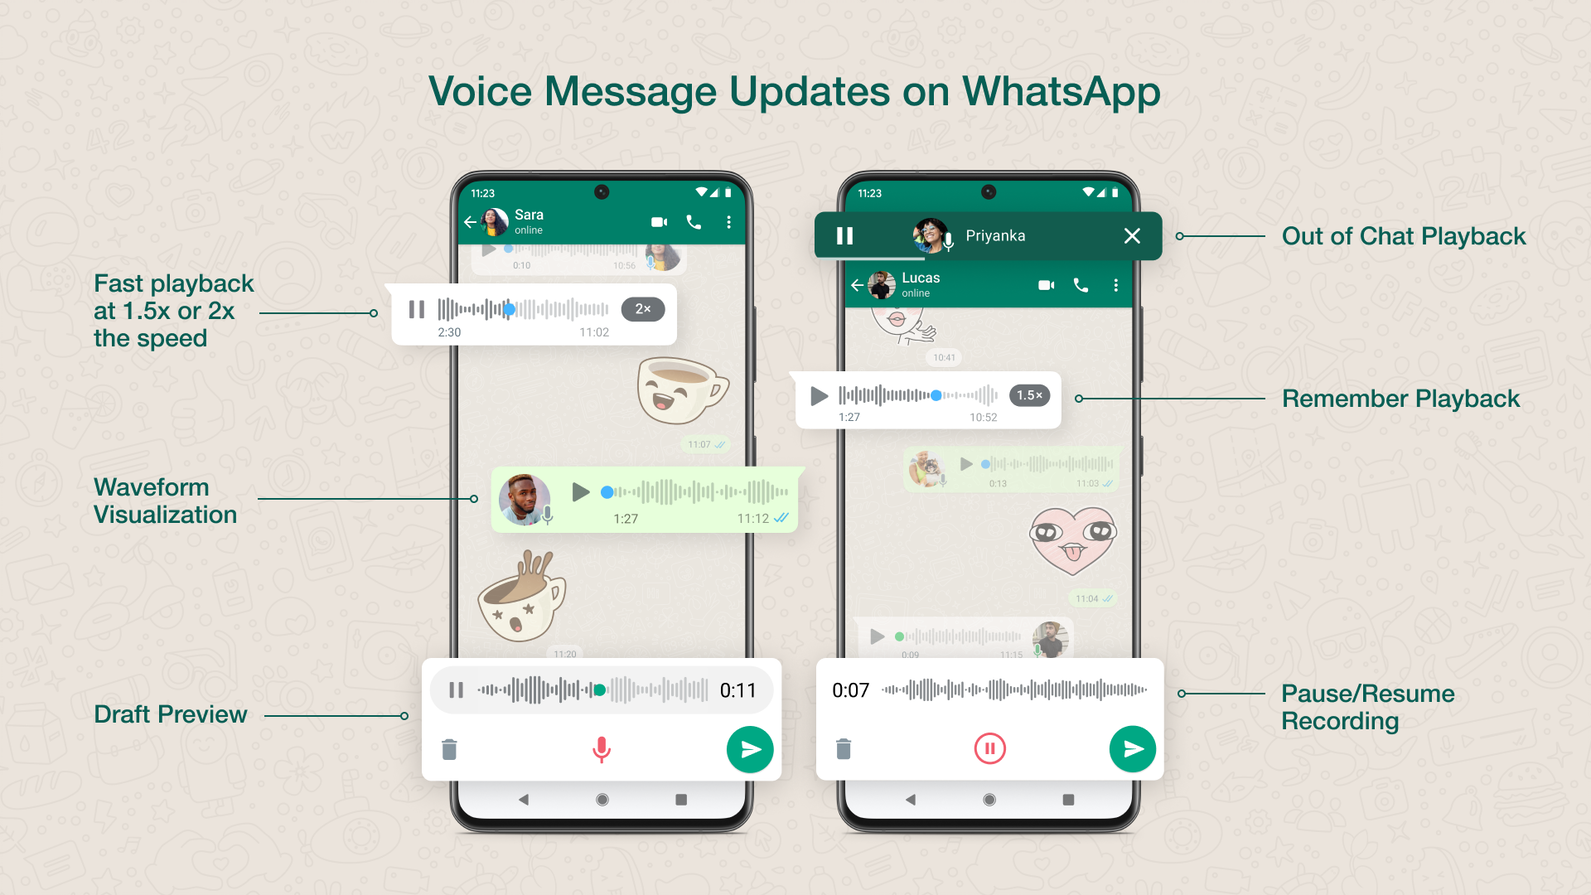 Infografica che mostra le nuove funzionalità di messaggistica vocale in WhatsApp.